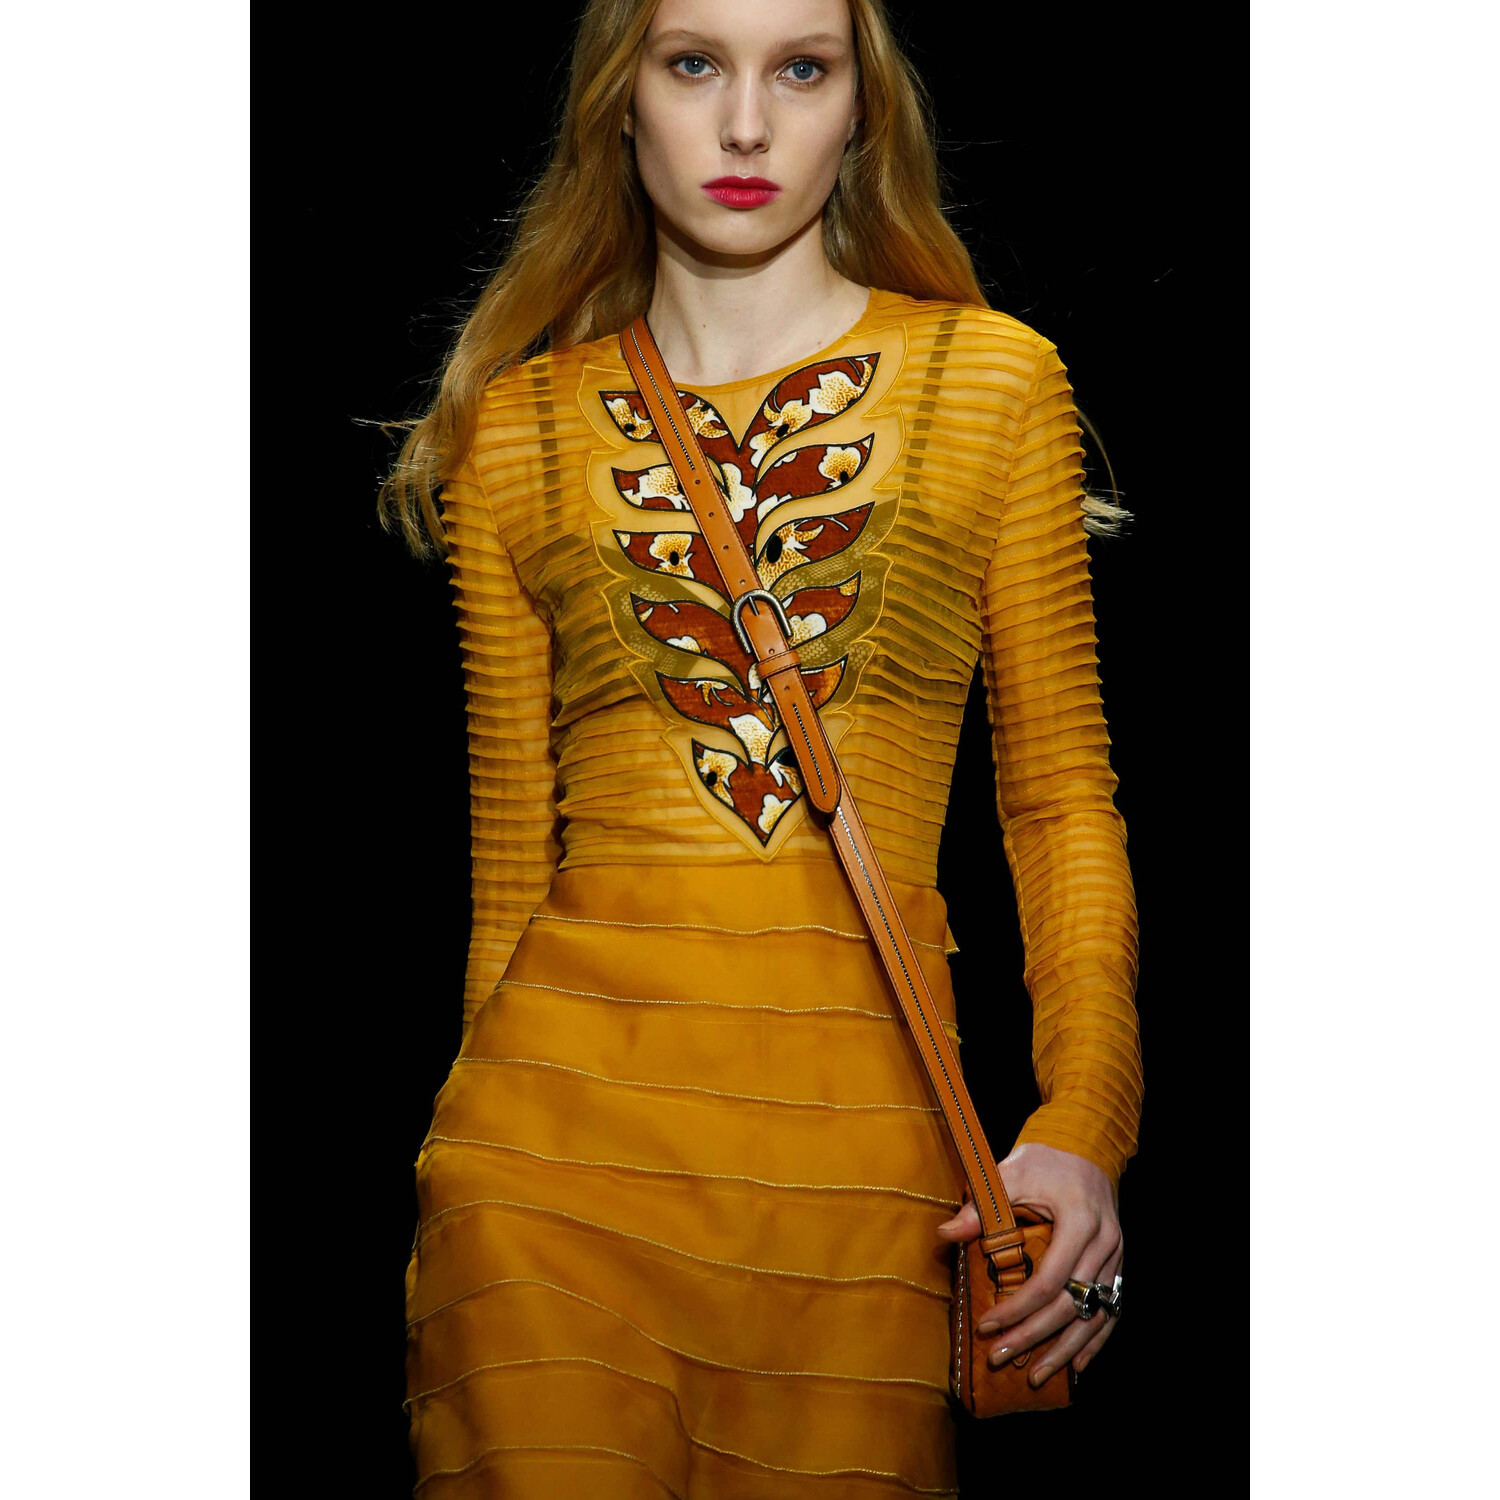 Фото Details Bottega Veneta Fall 2018 Ready-to-Wear Детали Боттега Венета осень зима 2018 коллекция неделя моды в Нью Йорке Mainstyles